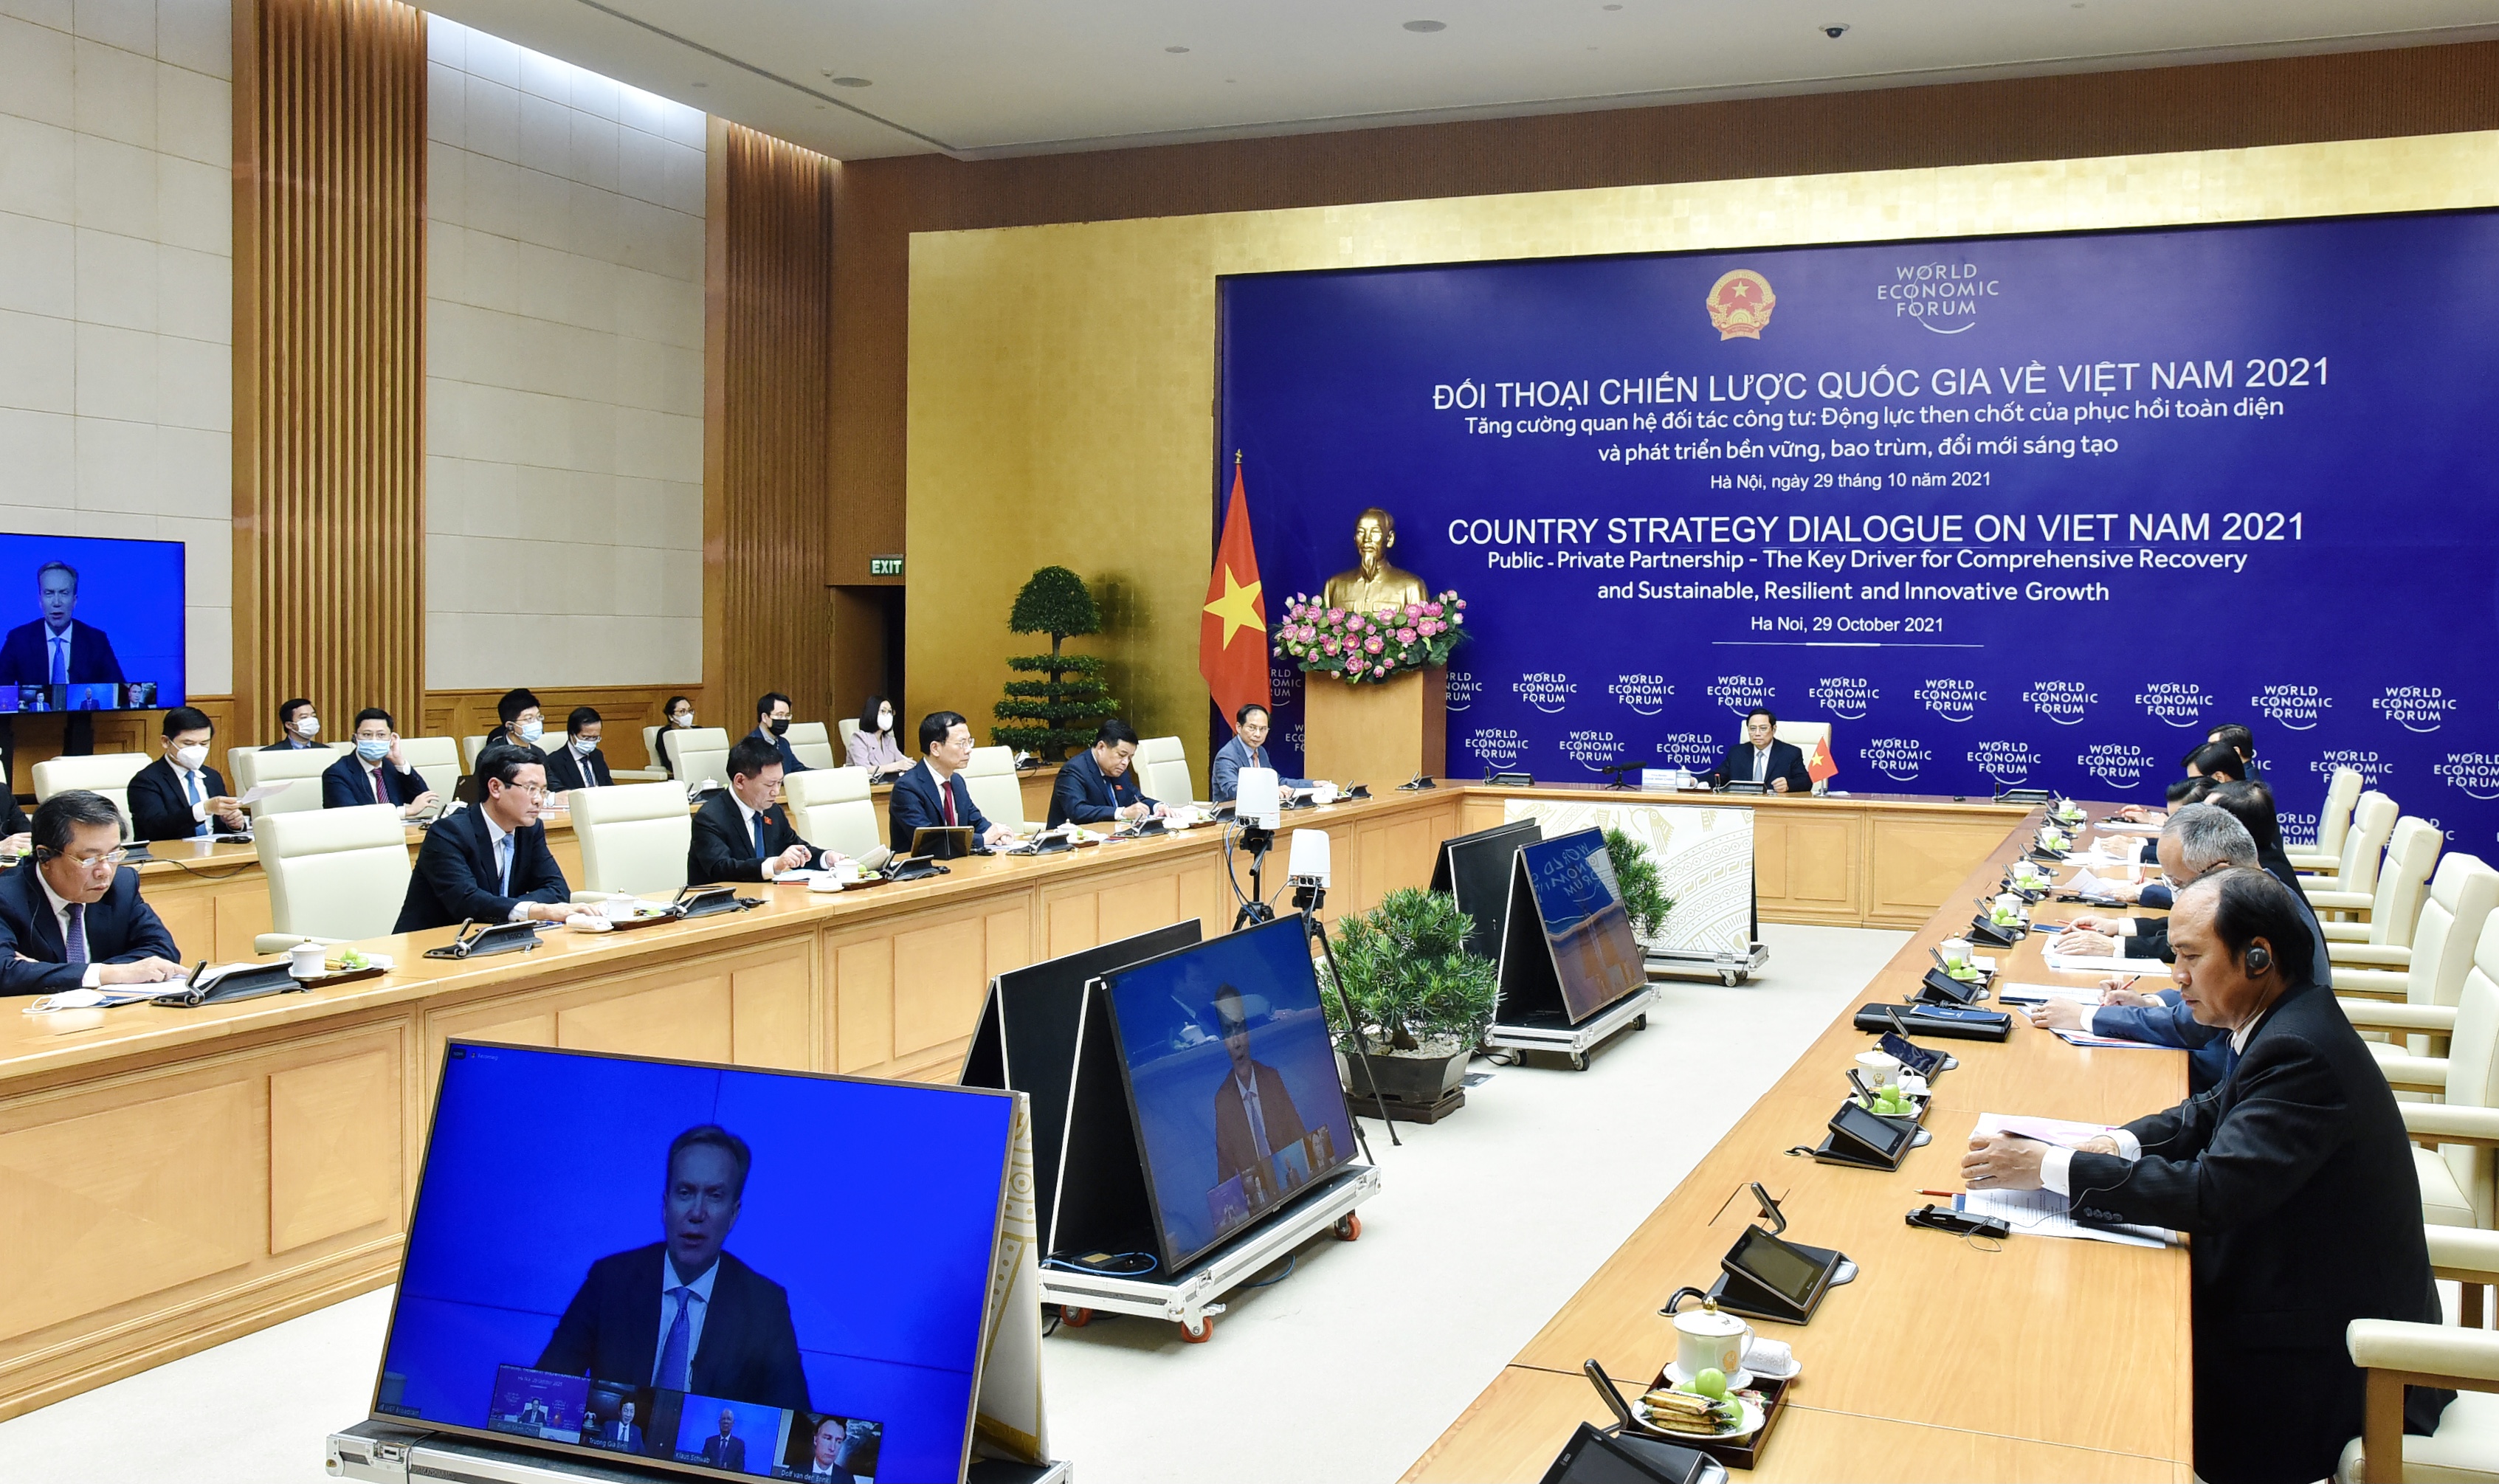 Chính phủ Việt Nam và cá nhân Thủ tướng đã làm việc không mệt mỏi để bảo vệ cuộc sống và sinh kế của người dân